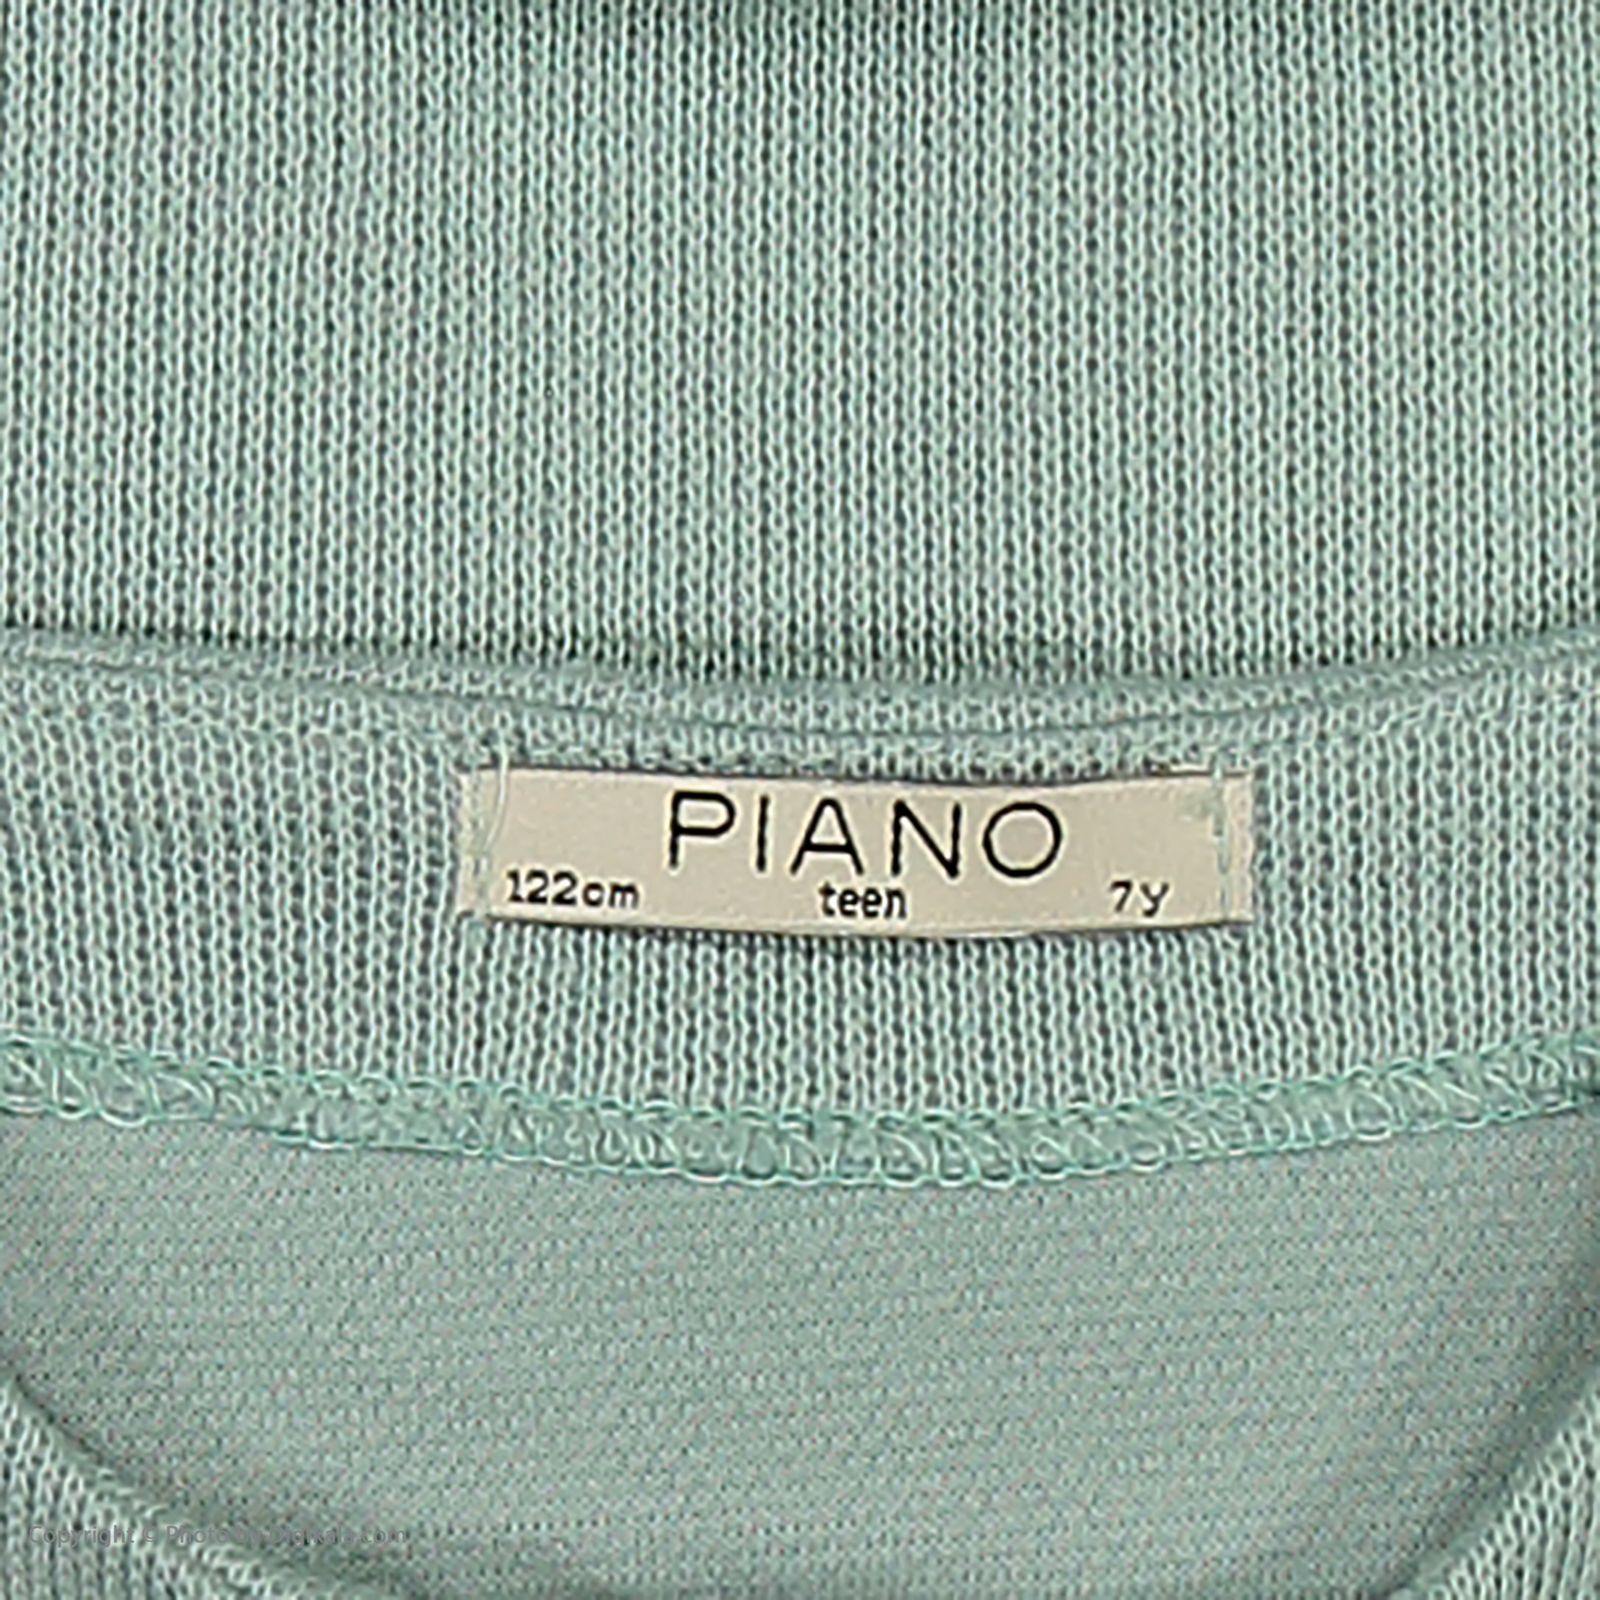 ژاکت دخترانه پیانو مدل 1009009801083-53 -  - 4